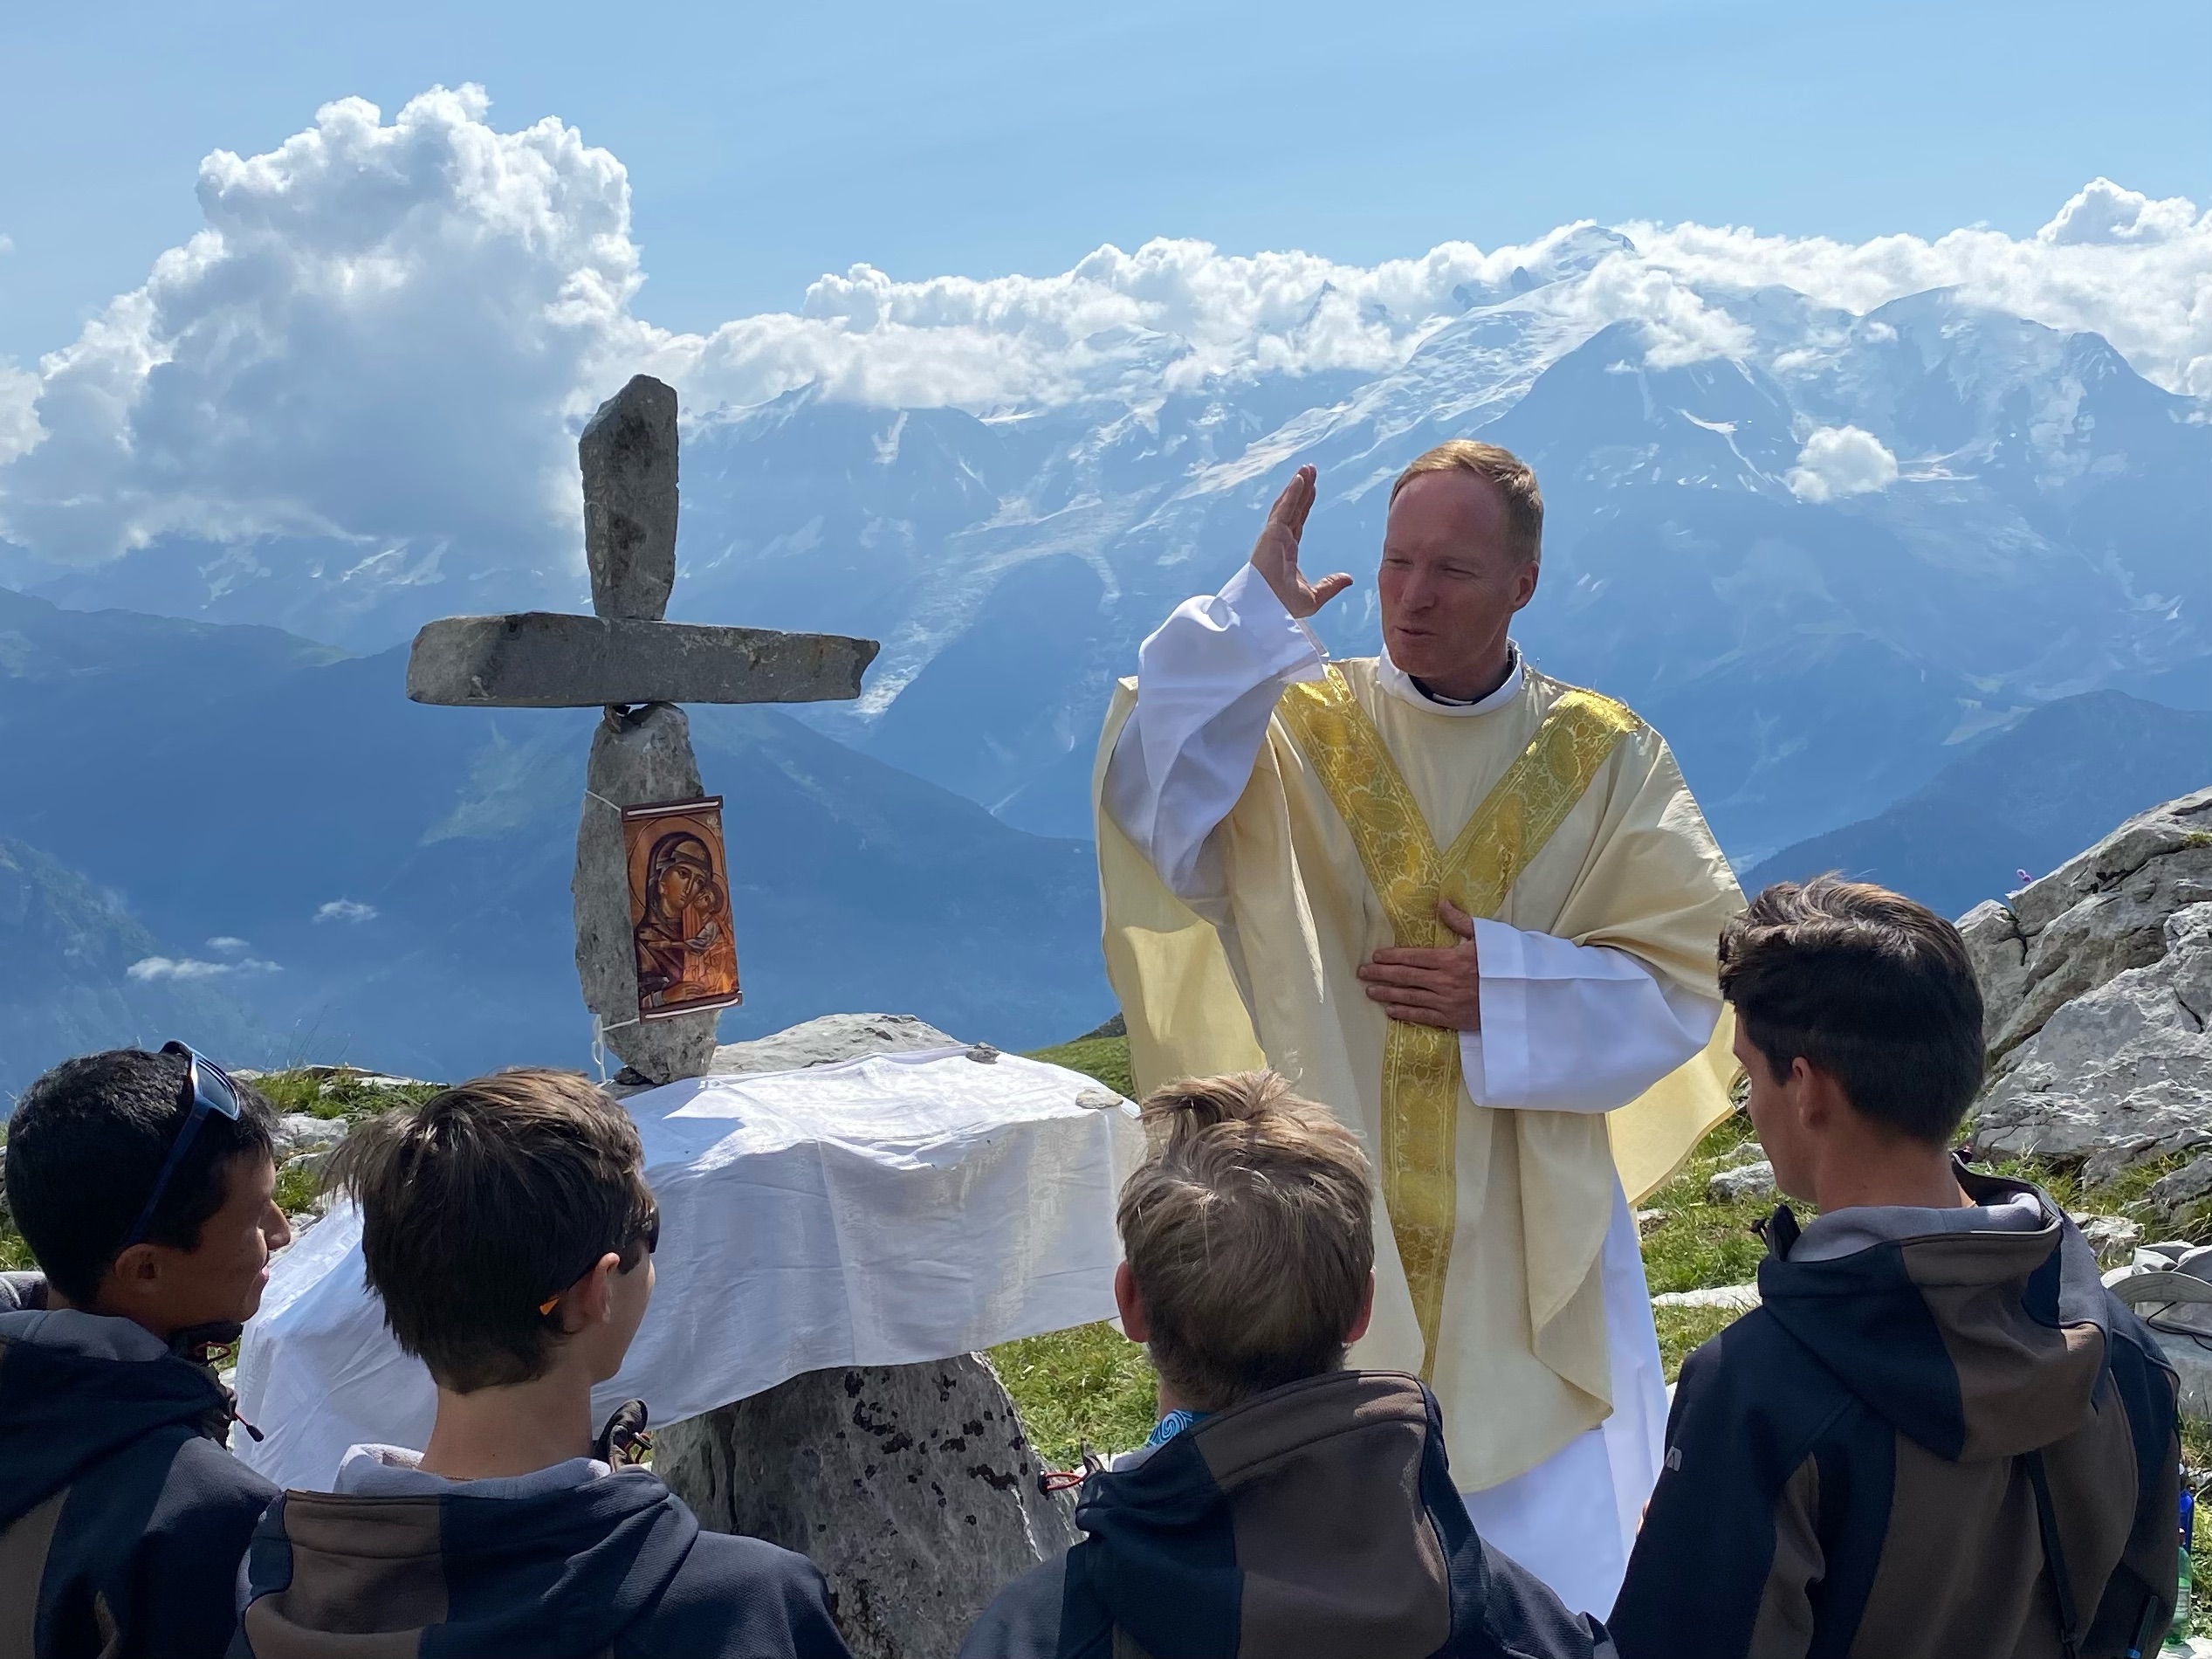 Italie : Un prêtre célèbre la messe en maillot de bain dans la mer, l'Eglise s'indigne Craplet